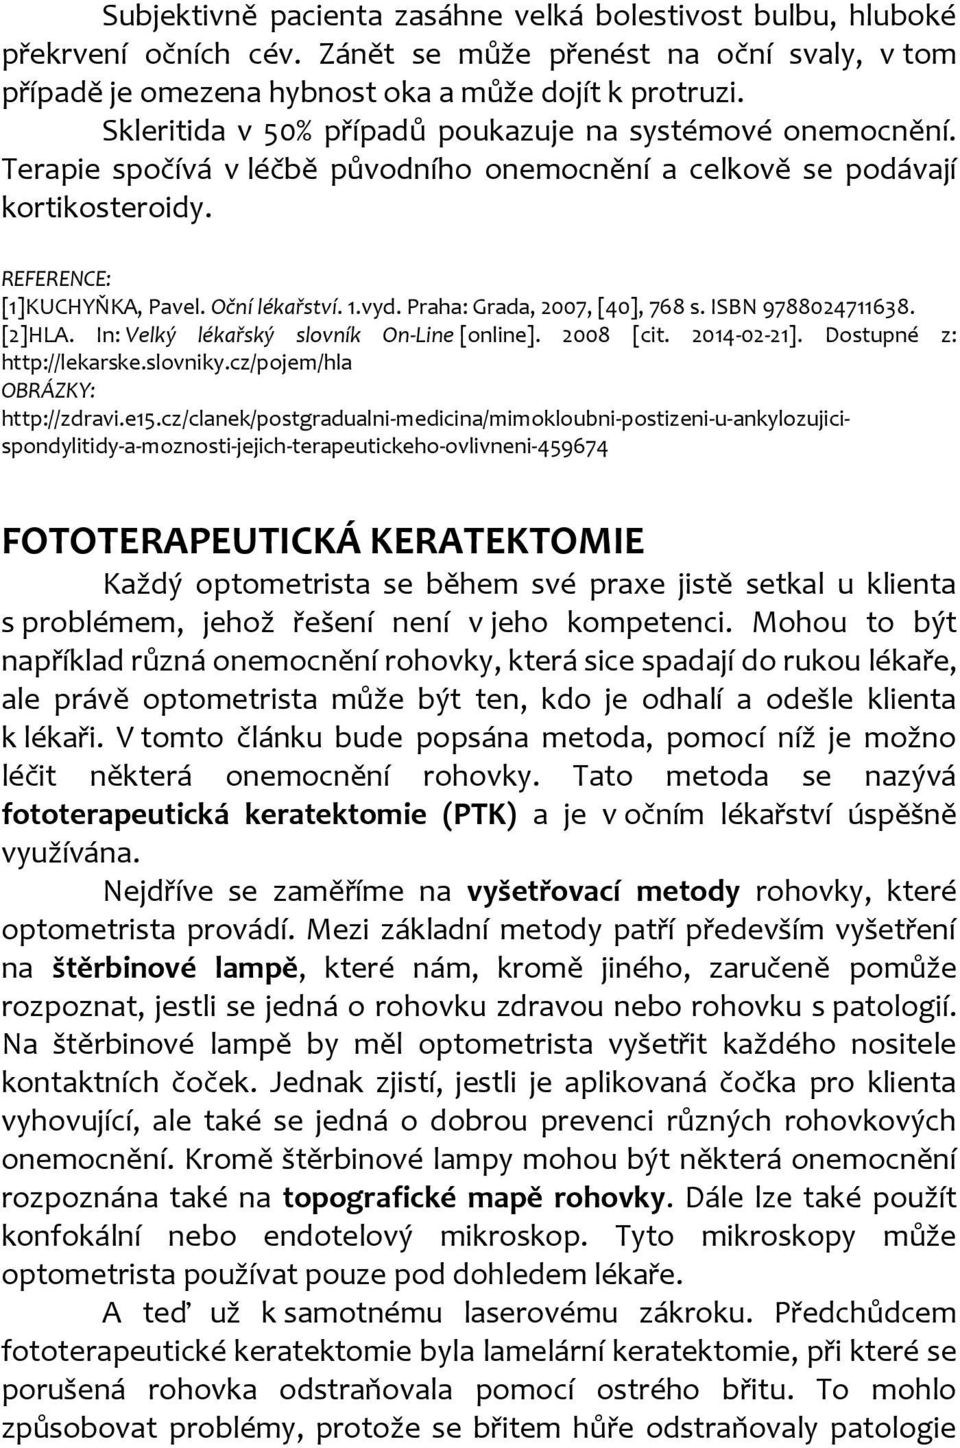 Praha: Grada, 2007, [40], 768 s. ISBN 9788024711638. [2]HLA. In: Velký lékařský slovník On-Line [online]. 2008 [cit. 2014-02-21]. Dostupné z: http://lekarske.slovniky.